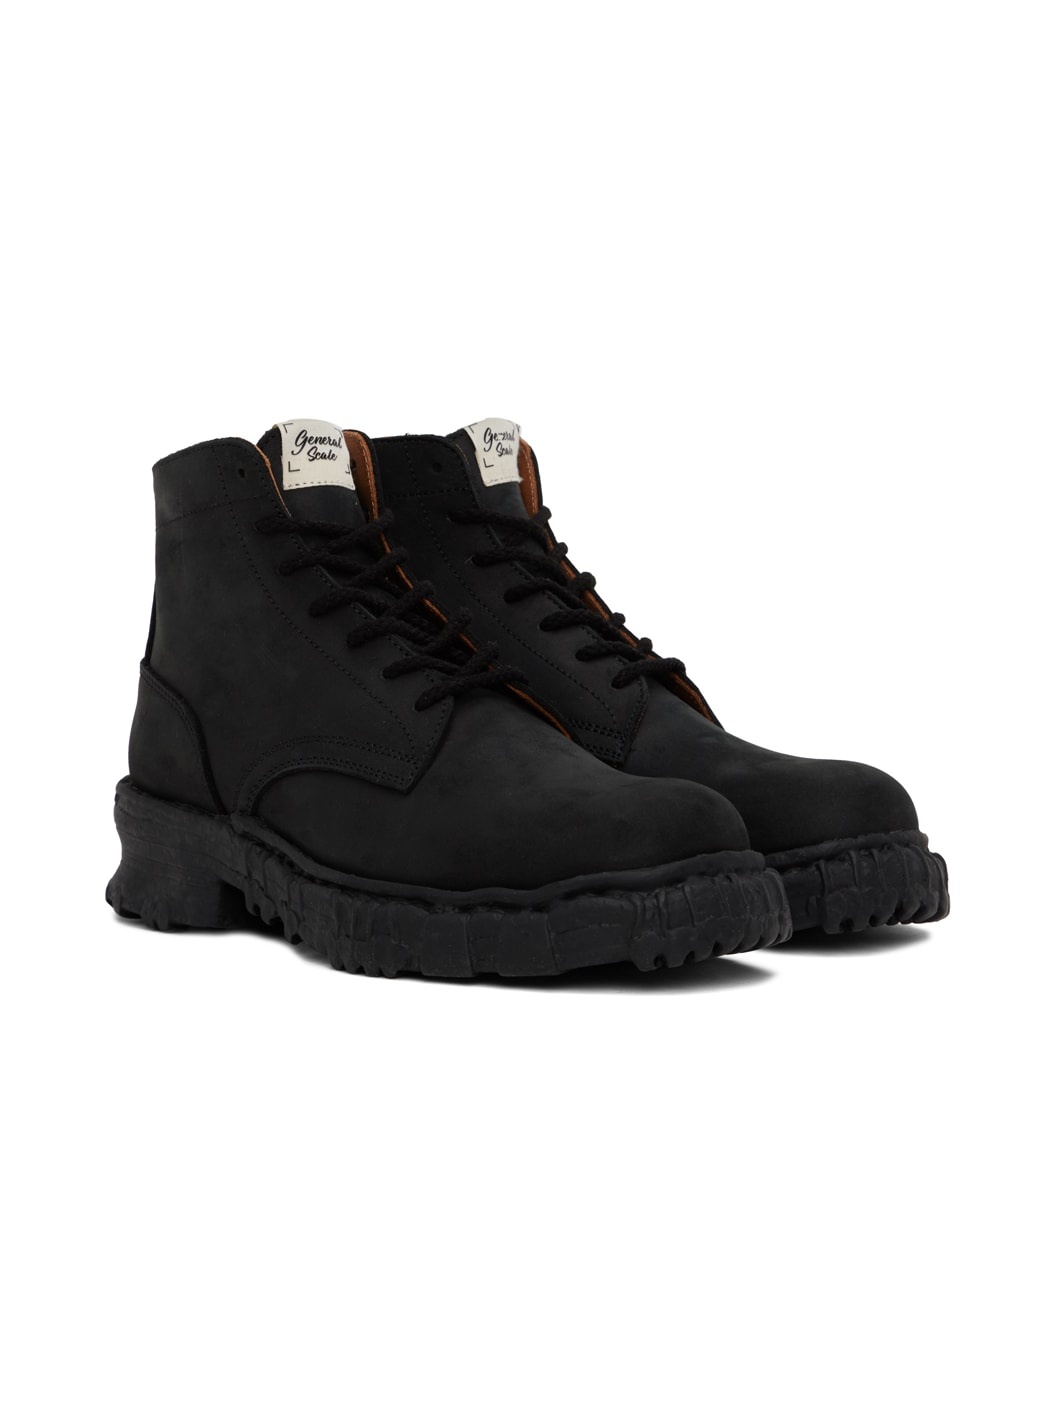 Black Vintage Like Boots - 4